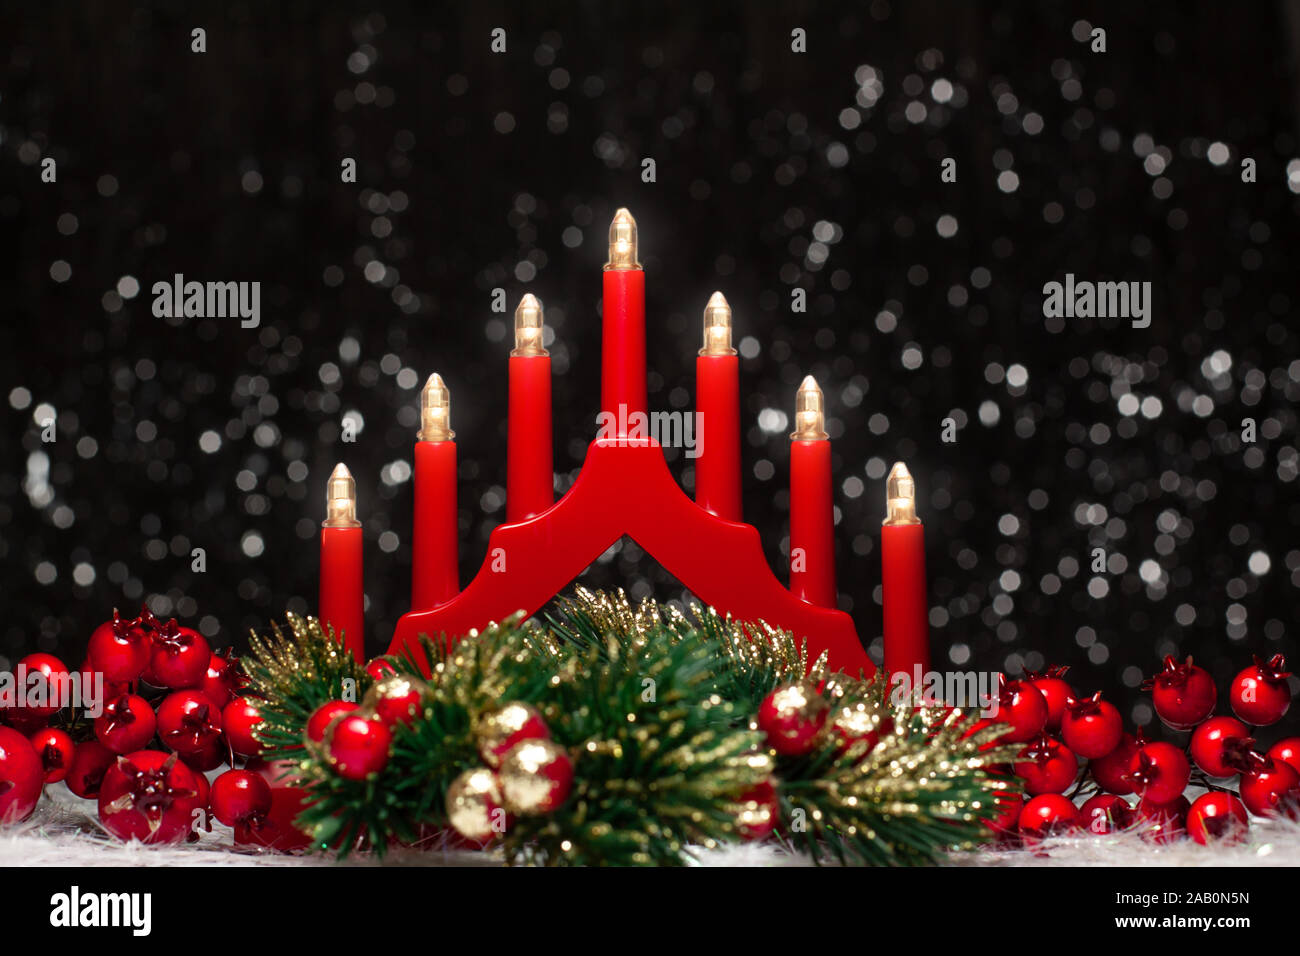 Puente de luces de velas rojas de Navidad, bayas rojas de izquierda y derecha sitio y Navidad verde corona redonda en color oro con las puntas sobre fondo oscuro Foto de stock